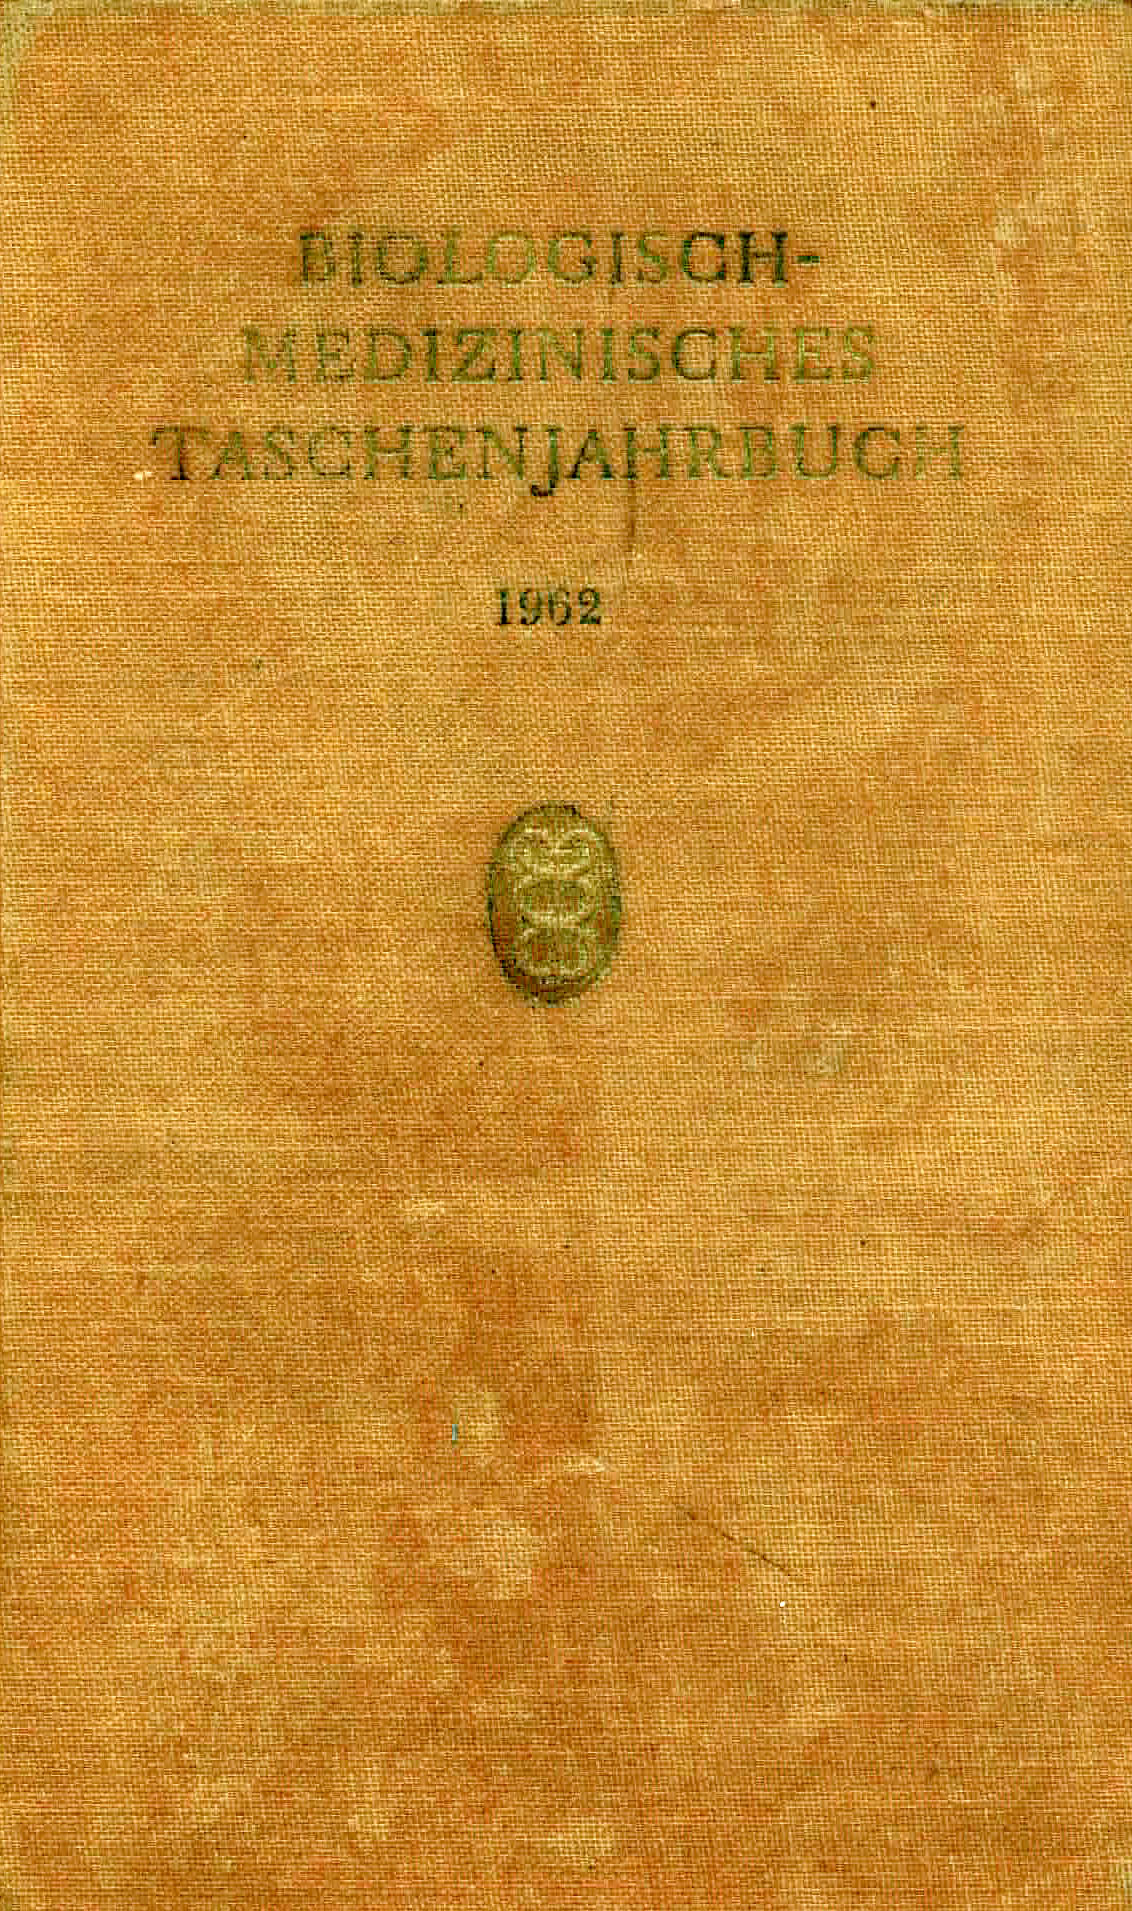 Biologisch - Medizinisches Taschenjahrbuch 1962 - Haferkamp, Dr. med. Hans